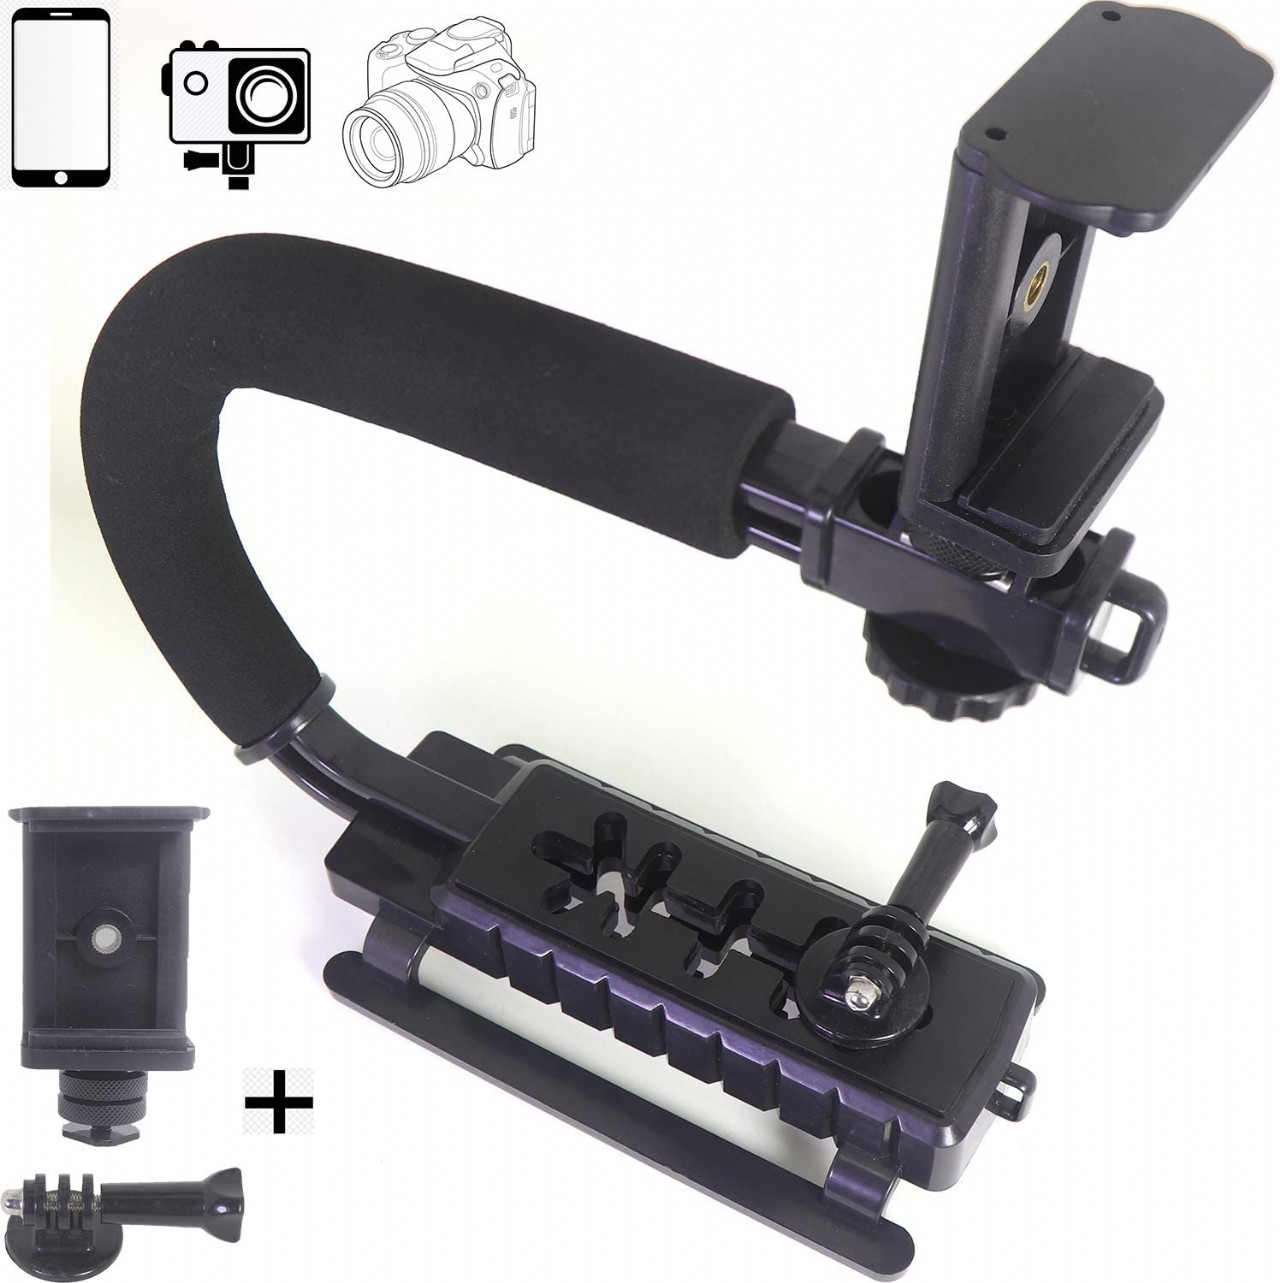 DSLR Stabilizer Handheld Video Action Stabilizing Handle Grip C Shape Professional Vlogging